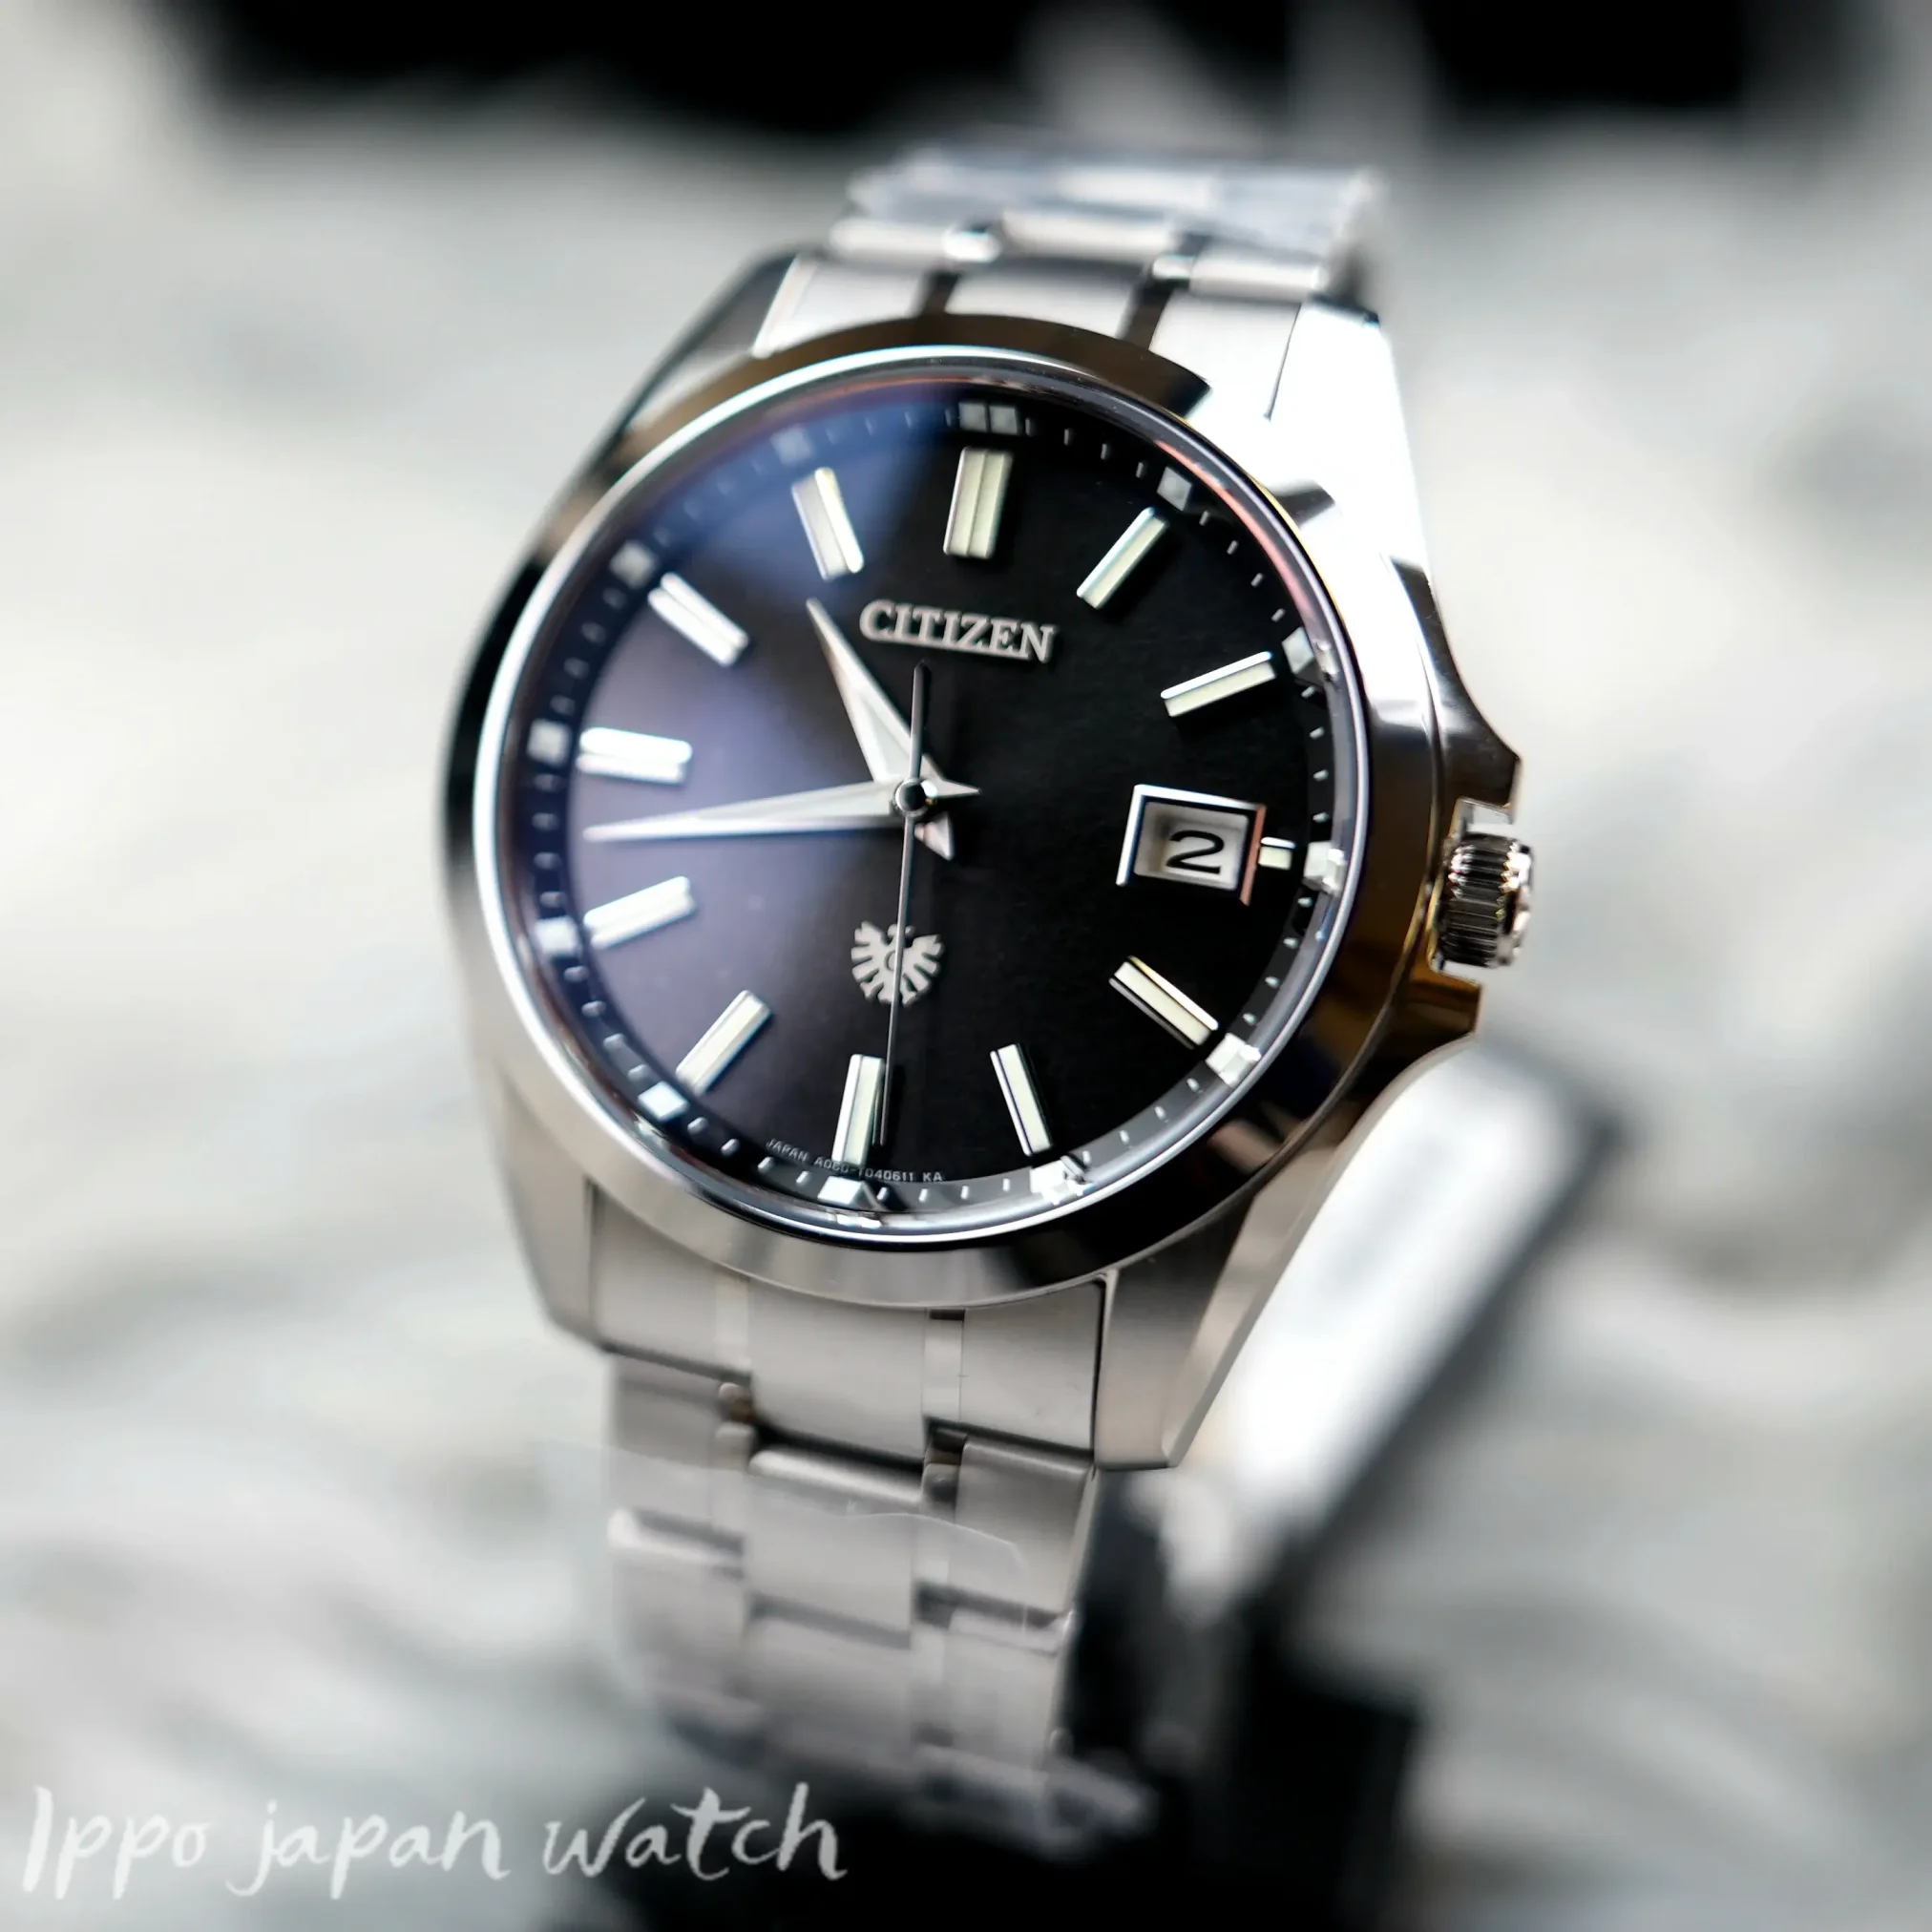 Đồng hồ The Citizen Eco-Drive Tosa Washi AQ4091-56E mặt số màu đen. Dây đeo bằng titanium. Thân vỏ bằng titanium.